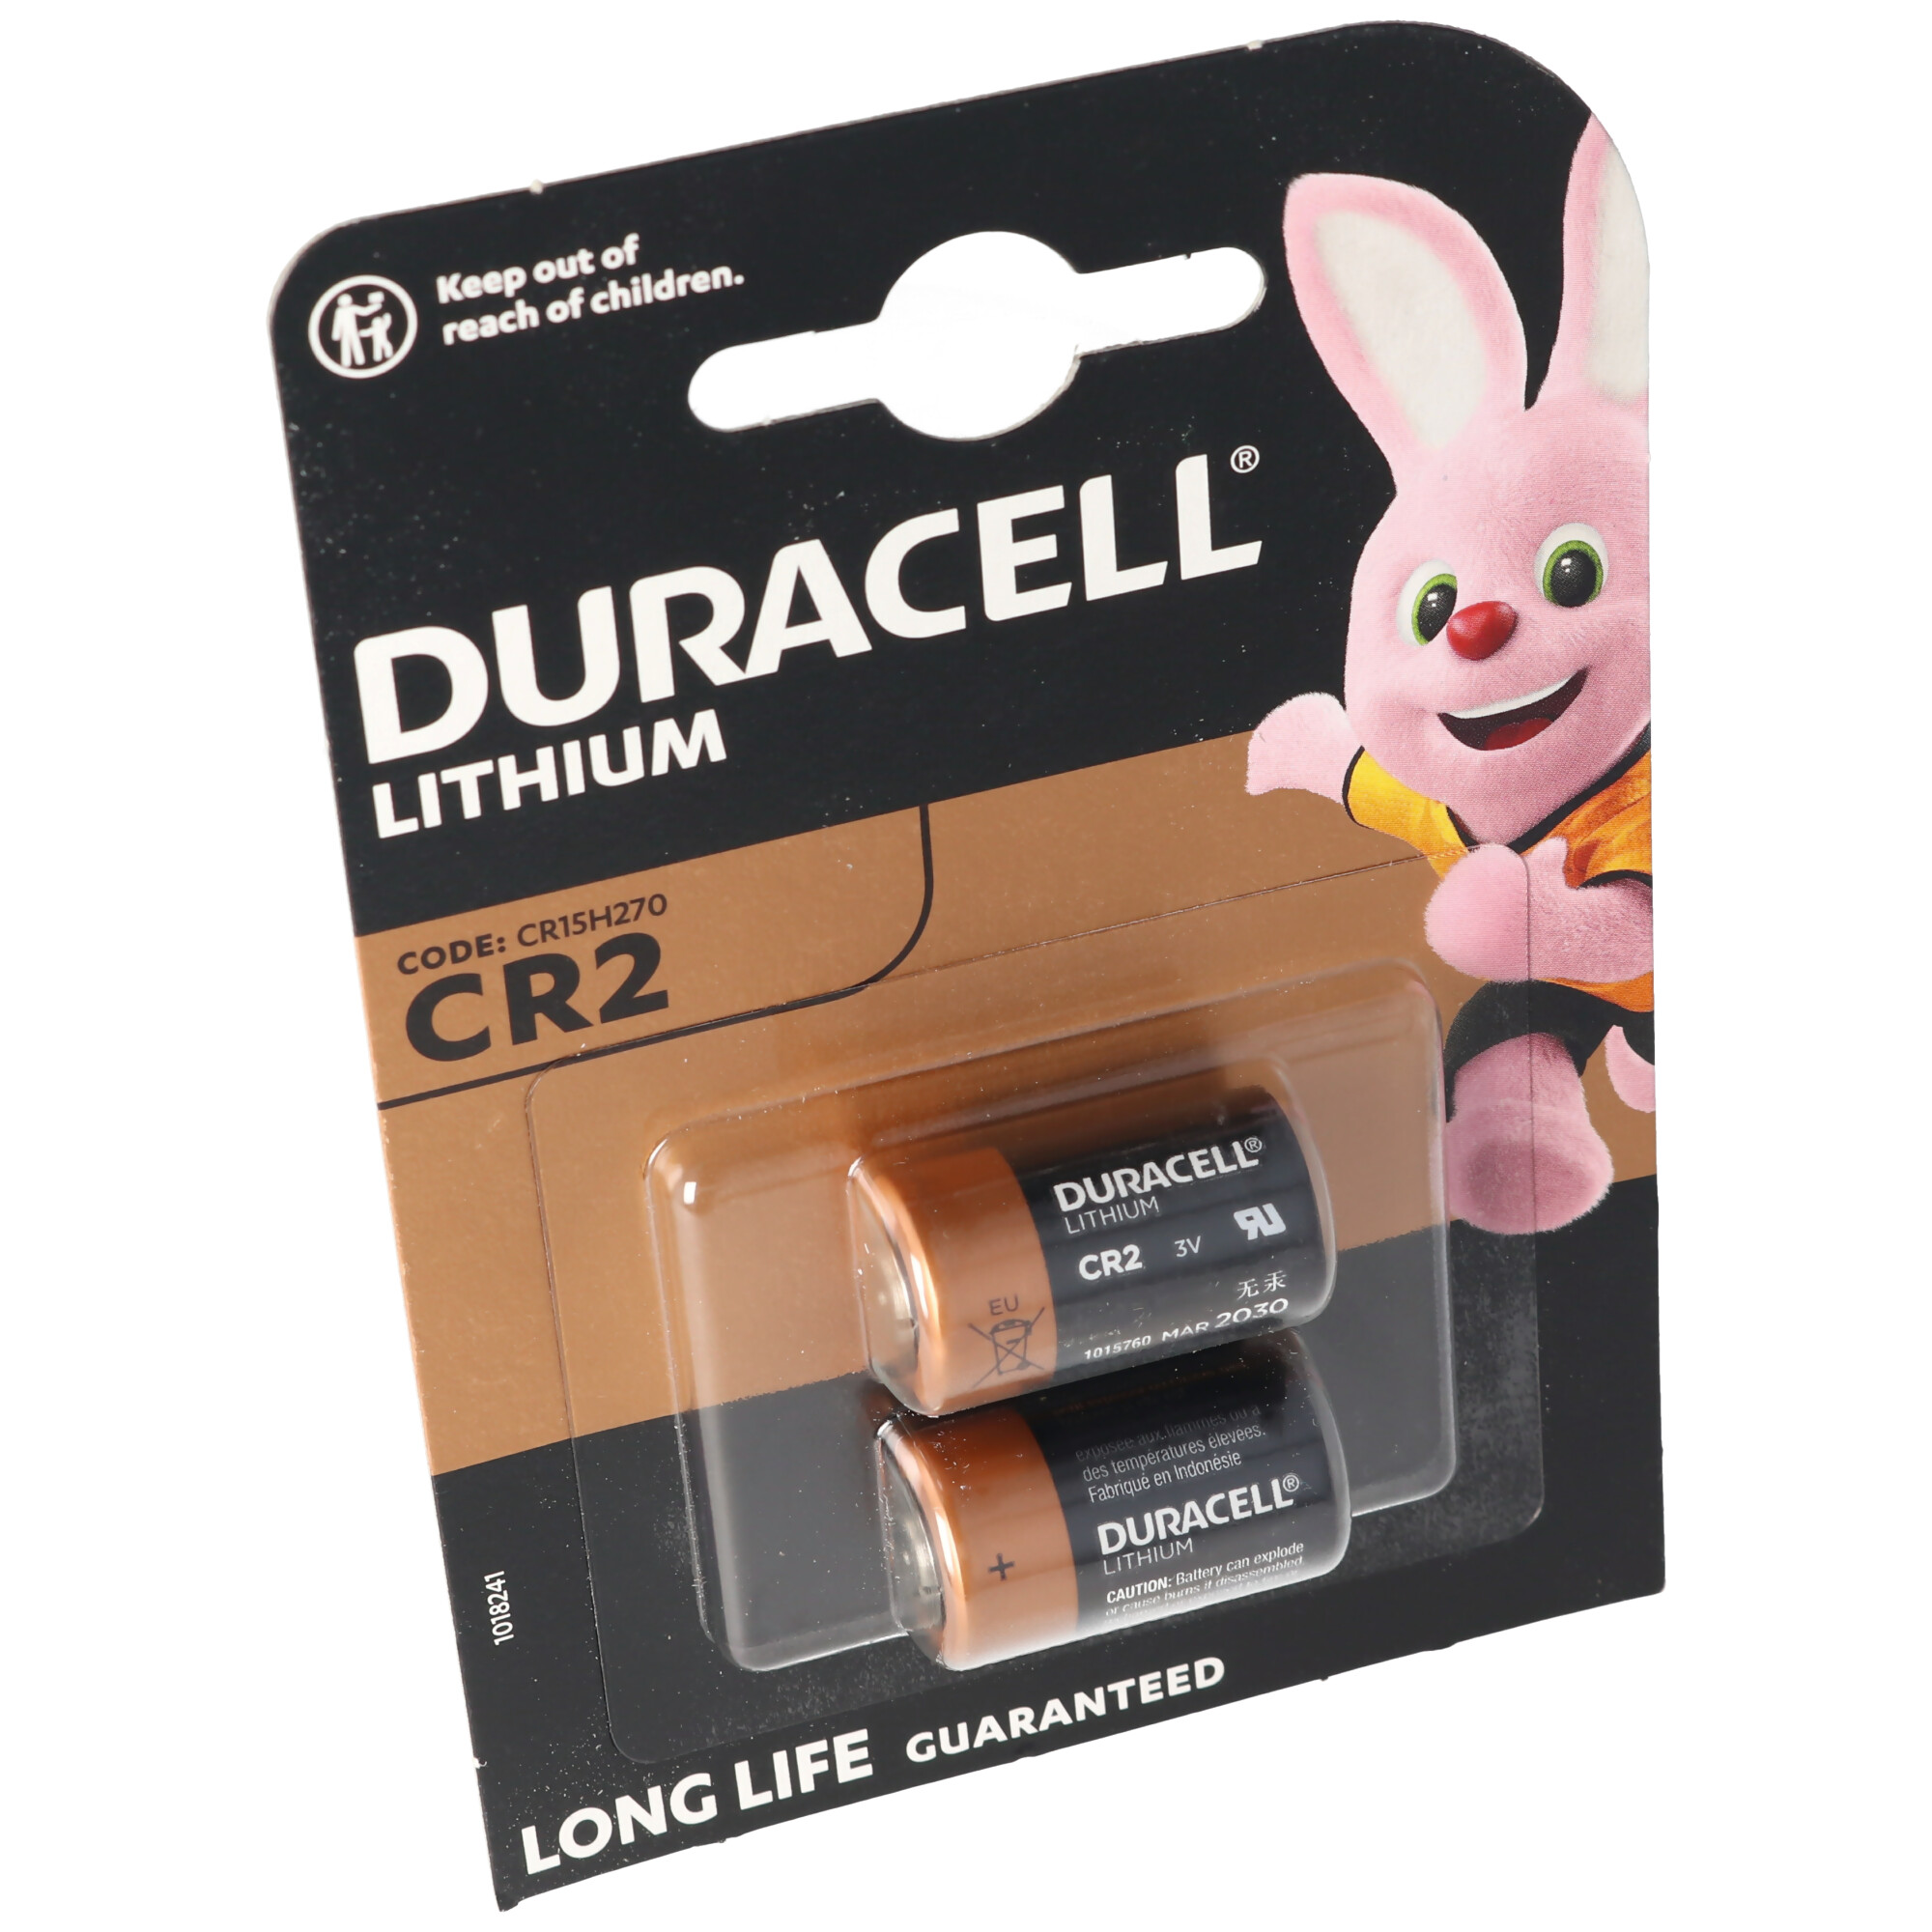 Duracell Photobatterie CR2 Ultra Lithium 3Vmax. 850mAh im 2er Blister, CR15H270